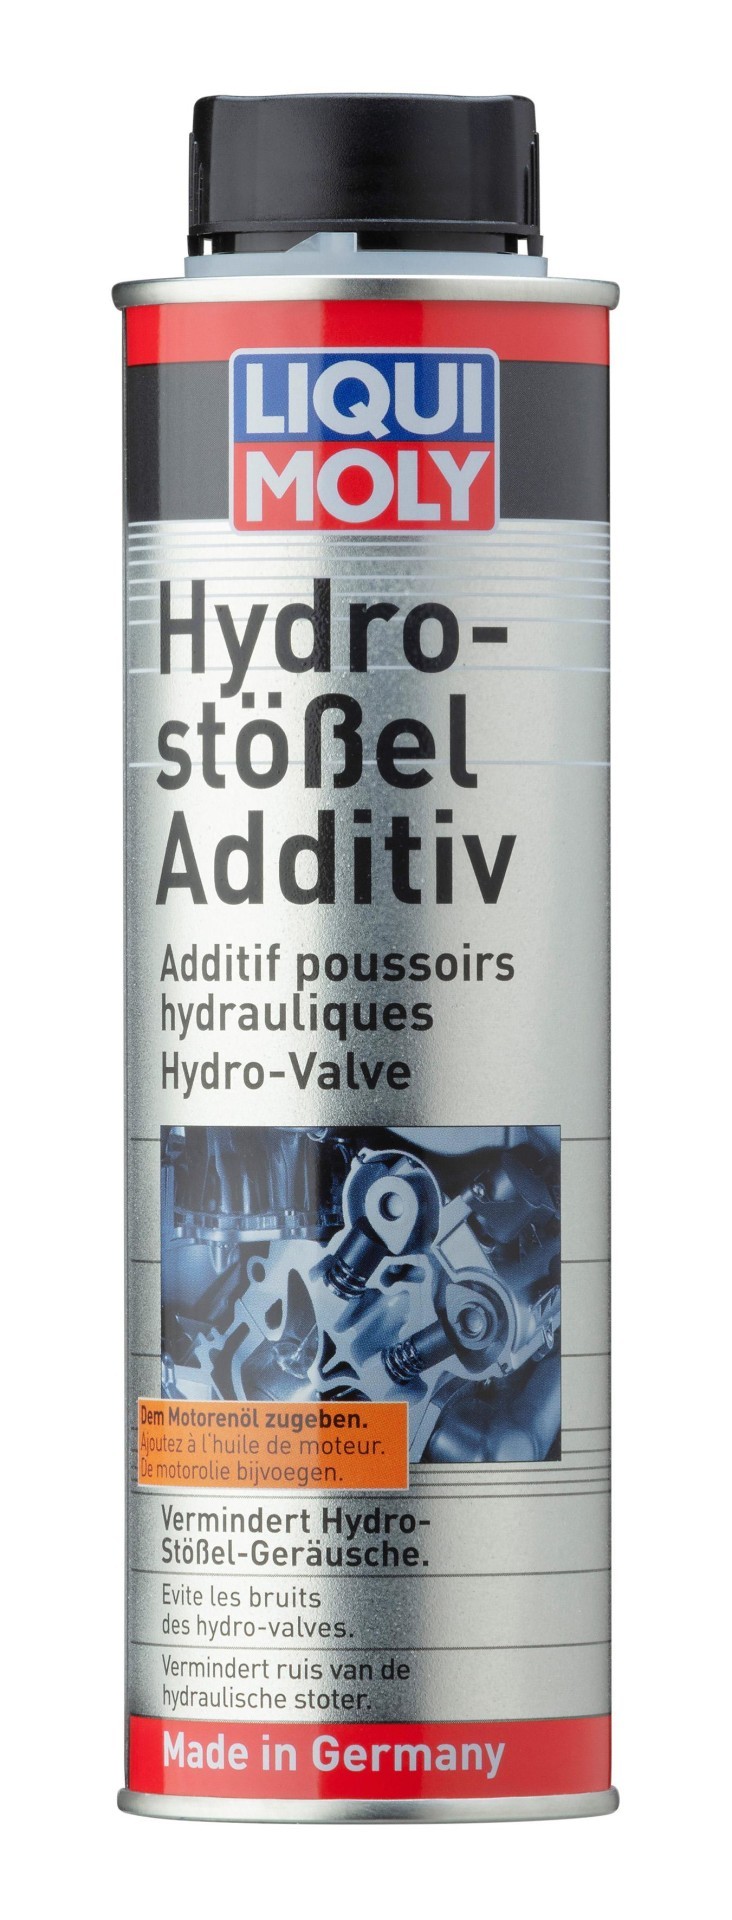 LIQUI MOLY Additiv "Hydro-Stel-Additiv (300 ml)", Art.-Nr. 1009